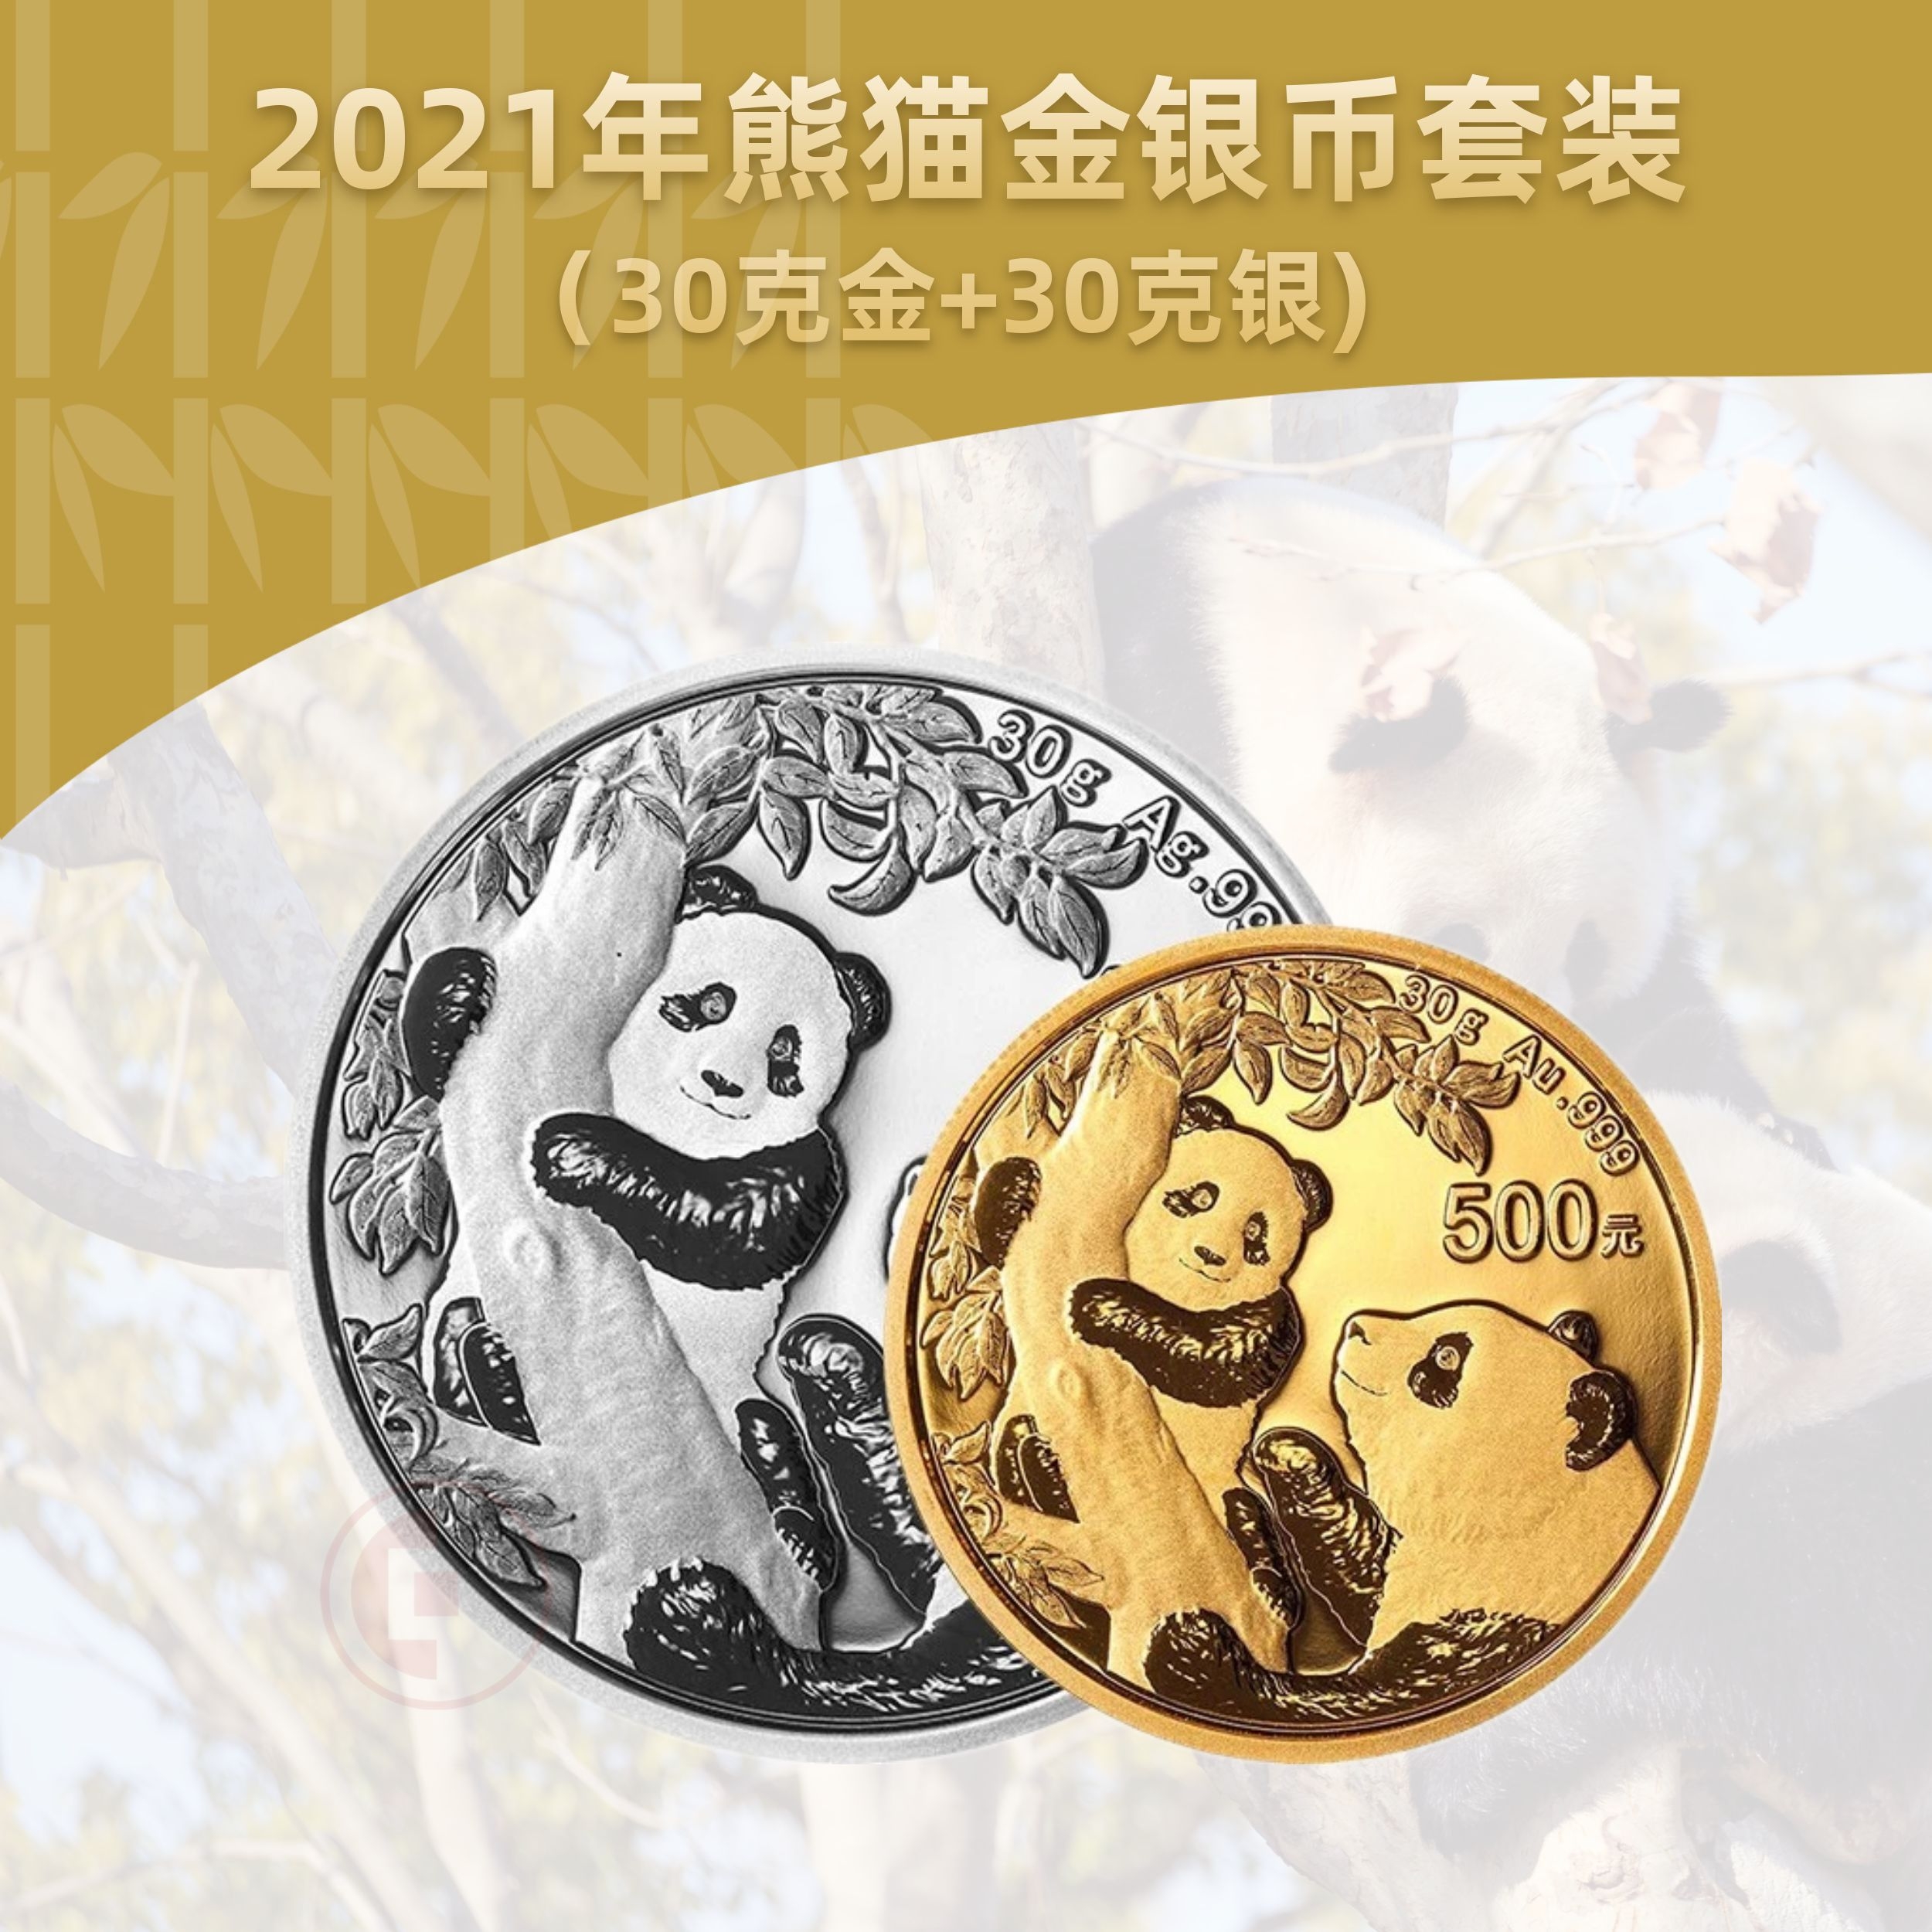 2021熊猫金银币套装  (30克金+30克银)